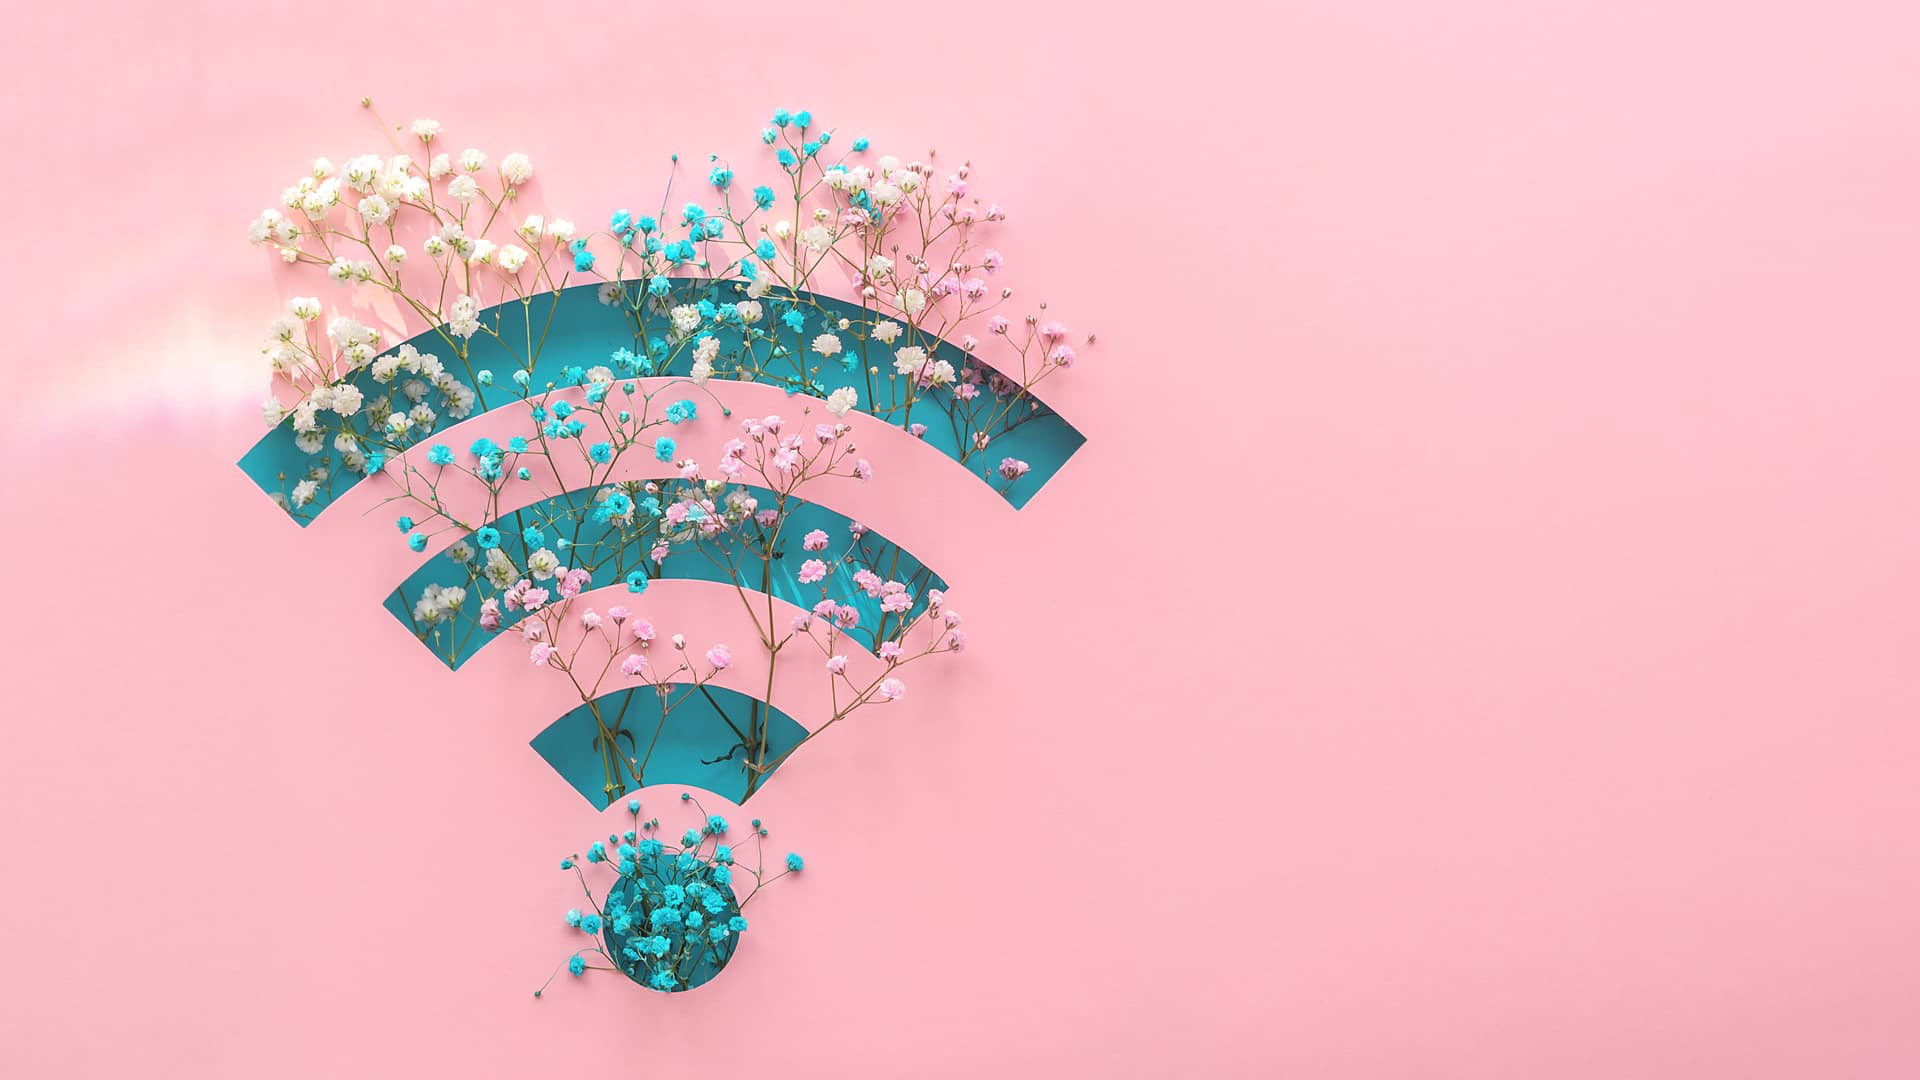 Botón WPS del router, conexión wifi sin contraseña y sus riesgos